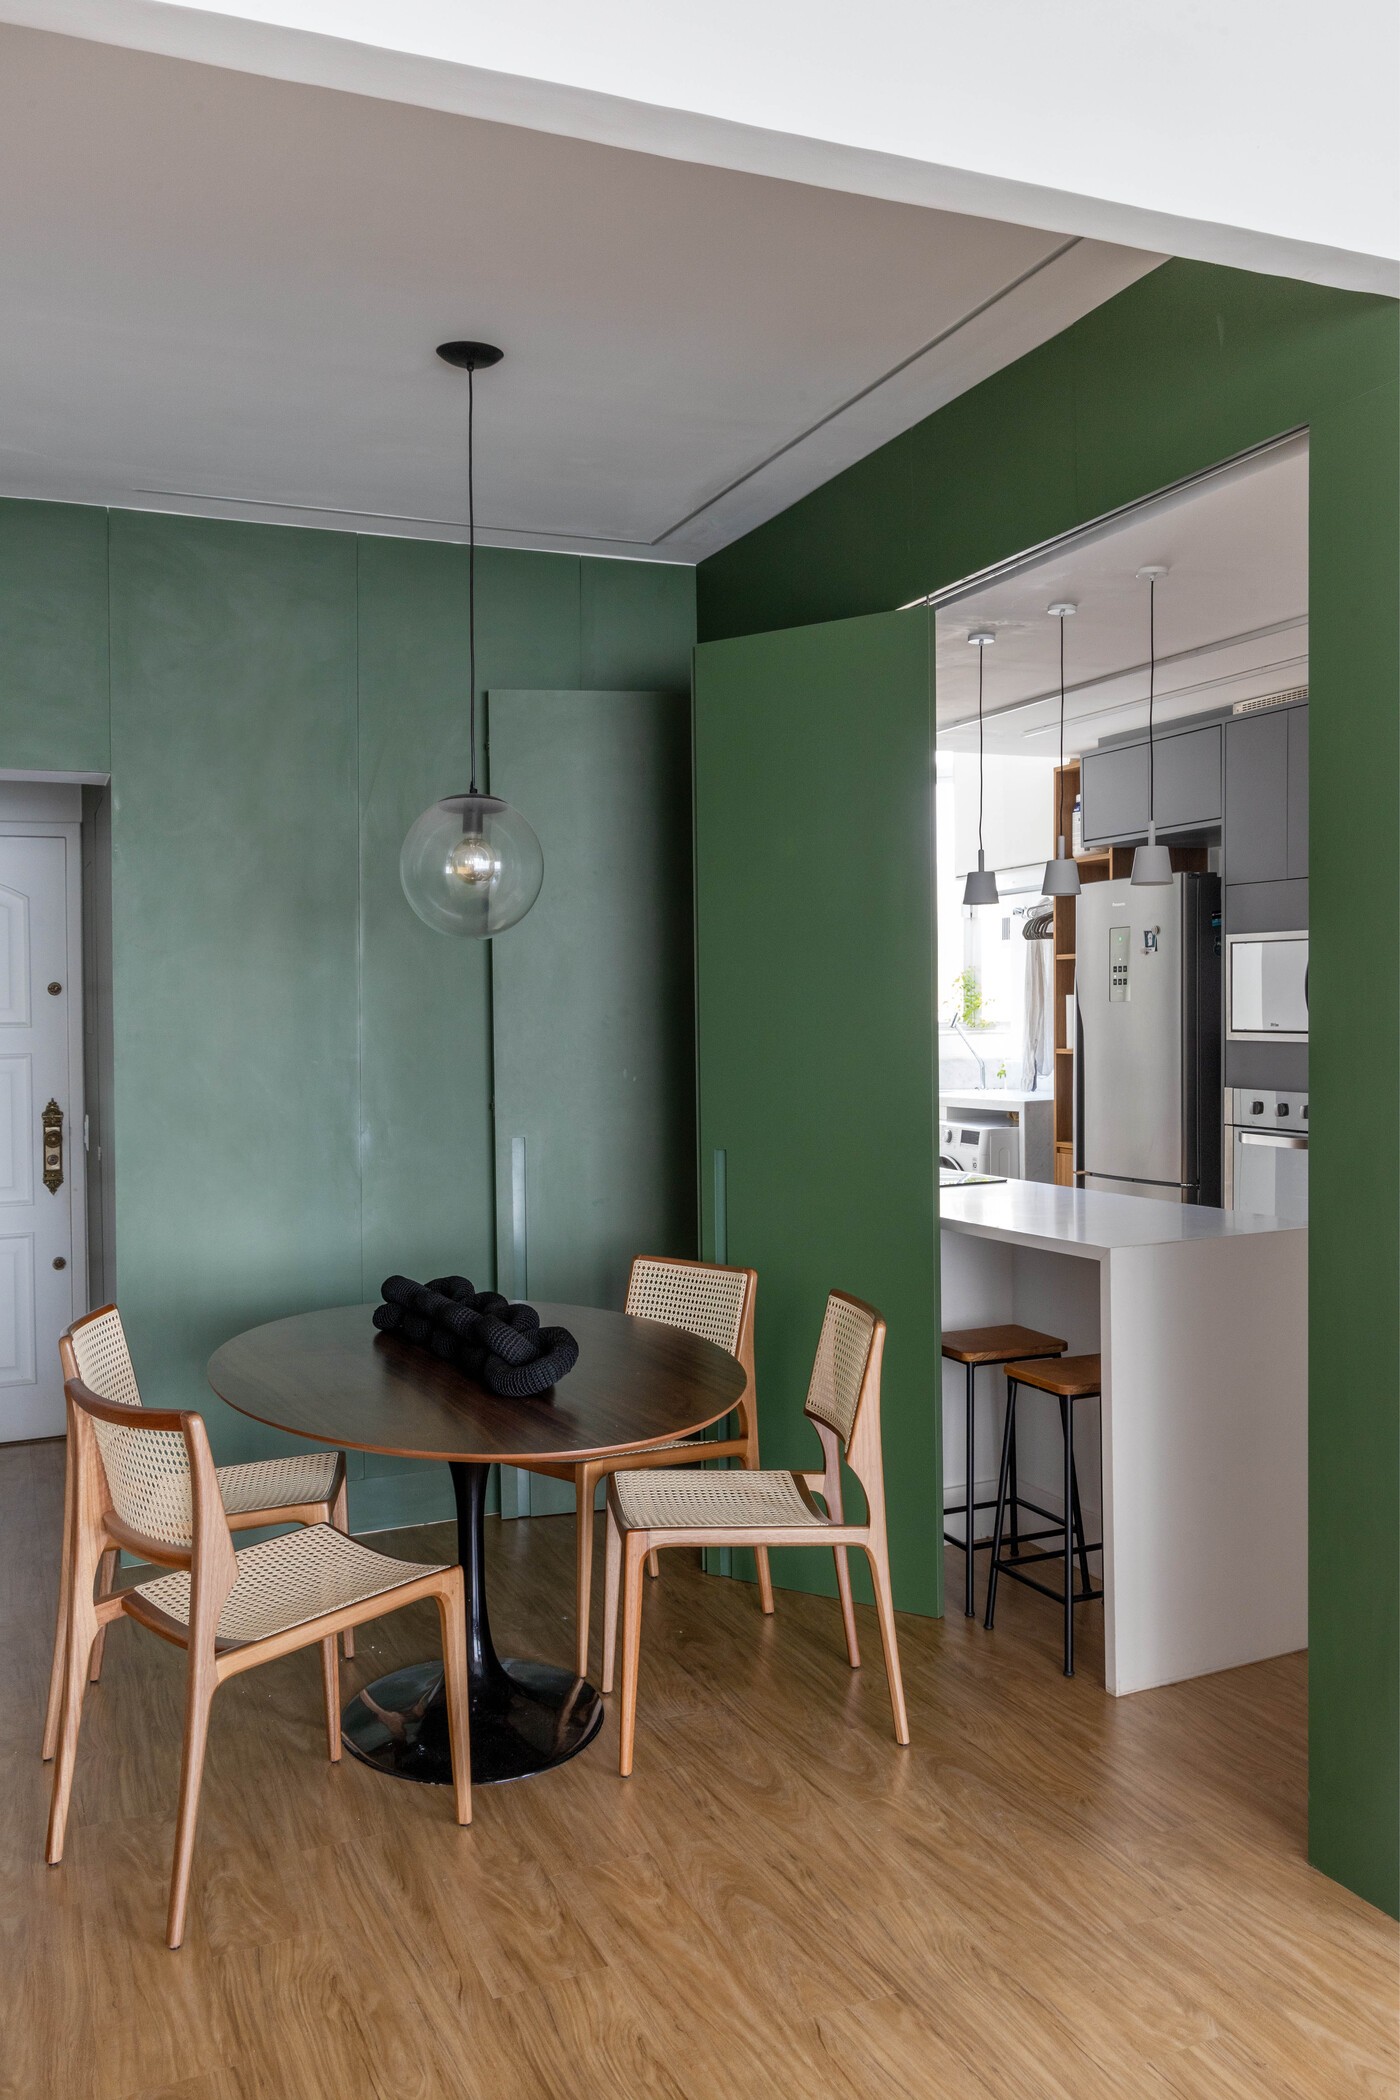 Décor do dia: living integrado tem balanço, painel verde e decoração jovial (Foto: André Nazareth)